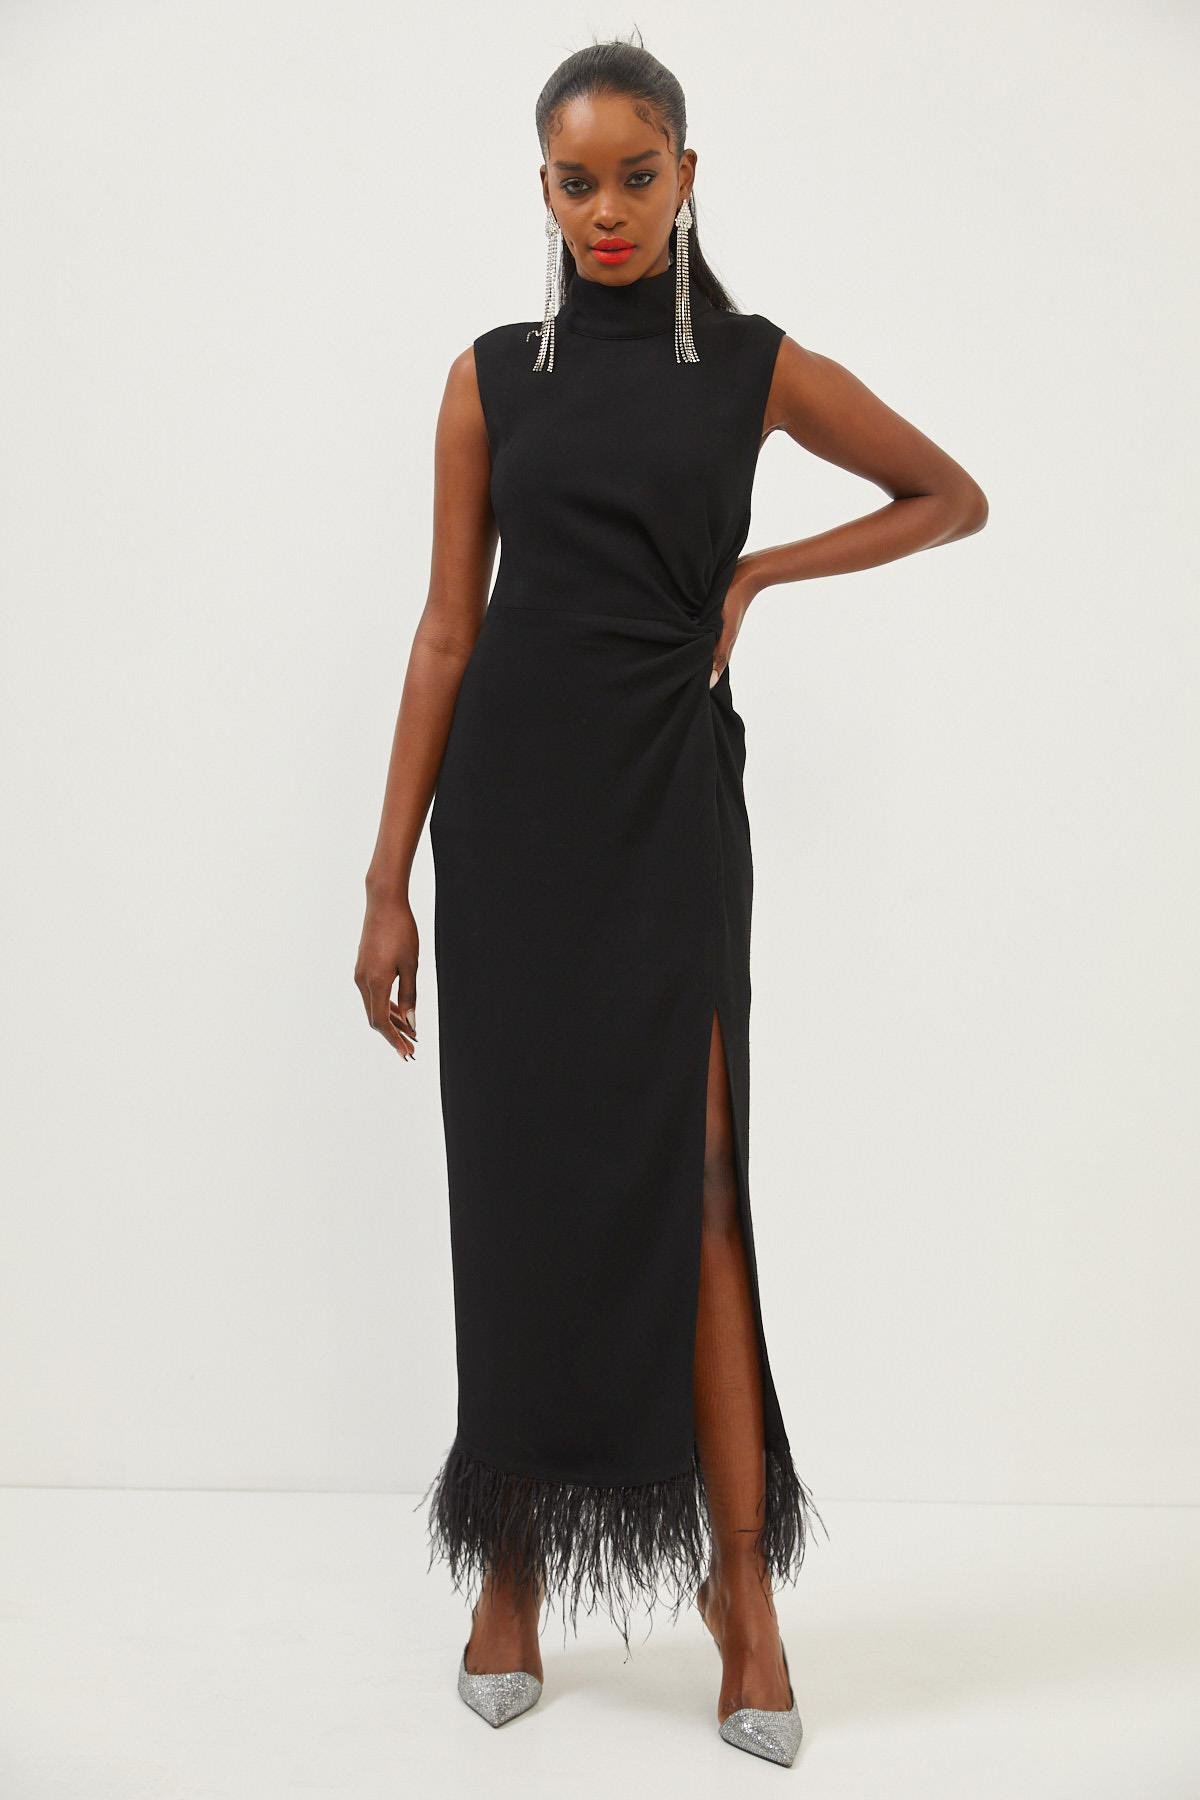 Kadın Siyah Dik Yaka Kolsuz Tüy Detaylı Maksi Boy Yırtmaçlı Elbise  ST070W40150901 | Setre